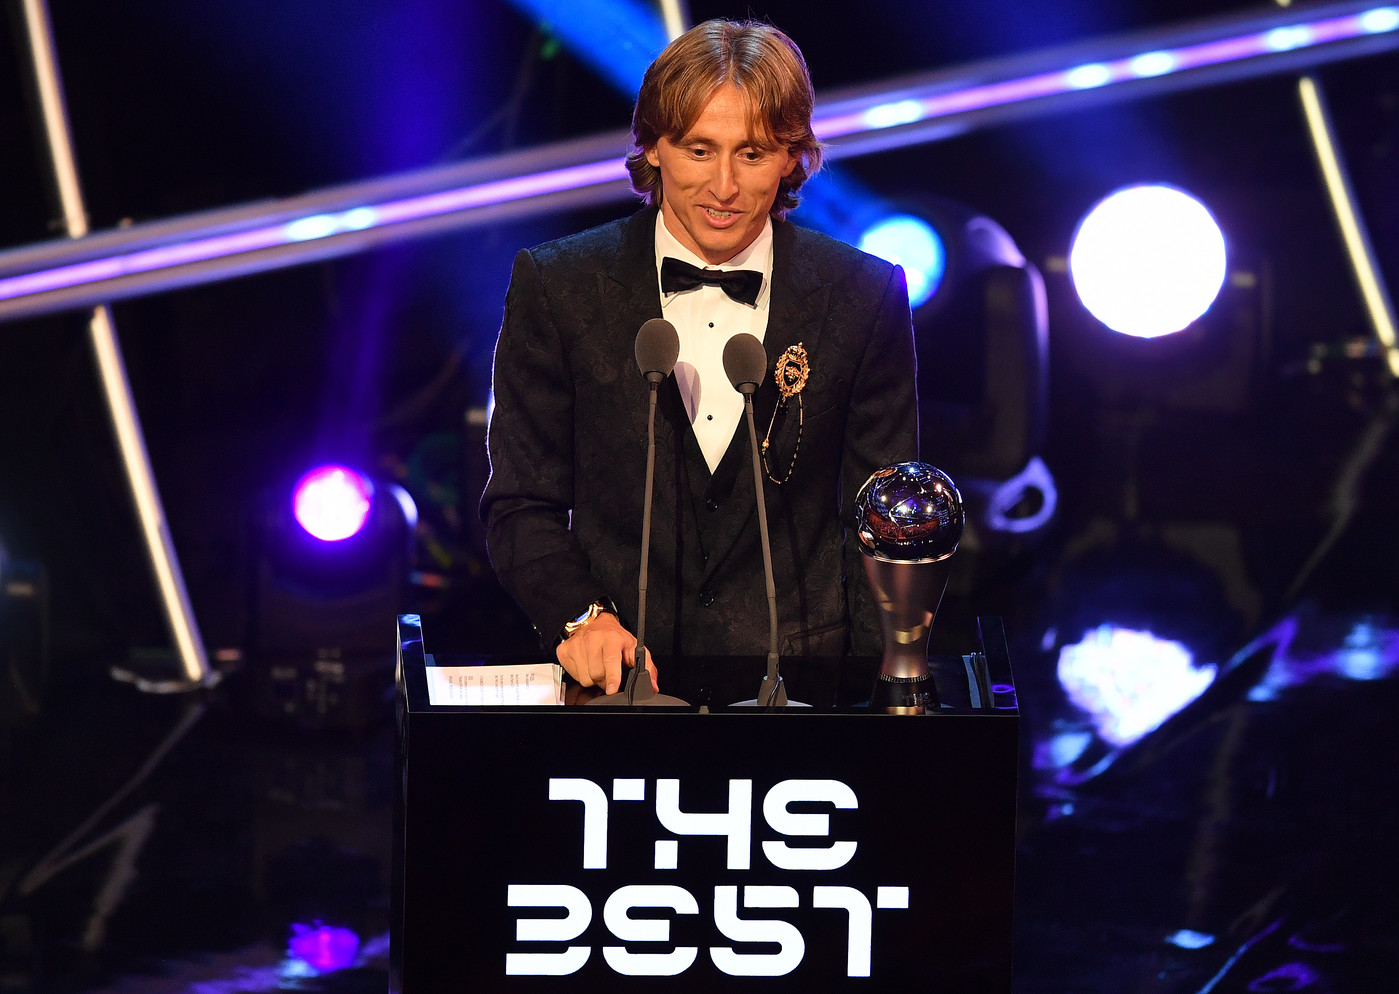 Trophées Fifa: Modric met fin au règne de Ronaldo et Messi